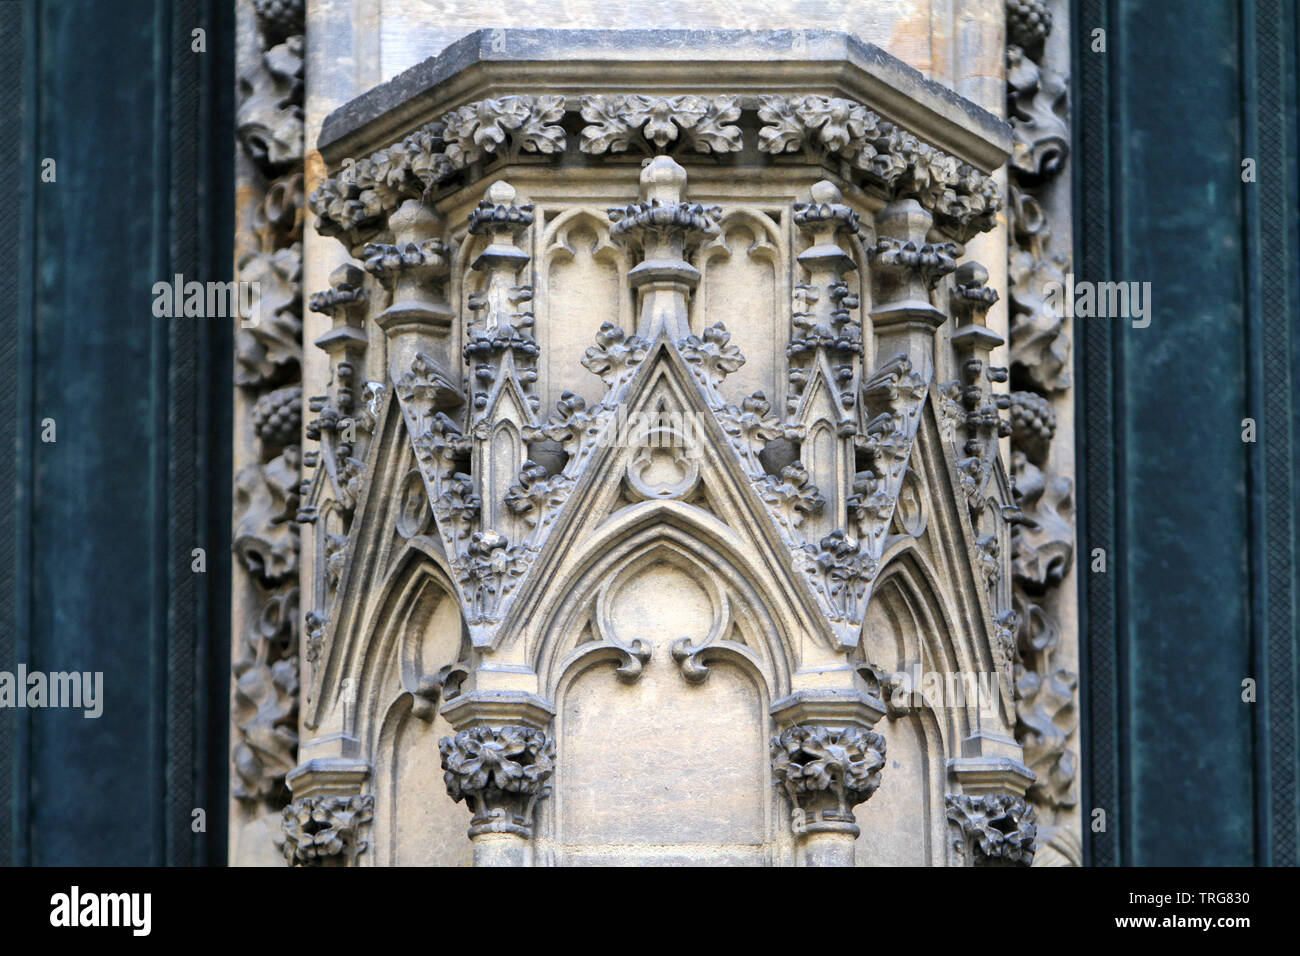 Ornementations sur la colonne centrale de la cathédrale Saint-Guy Venceslas et Adalbert. Prague. République Tchèque. Banque D'Images